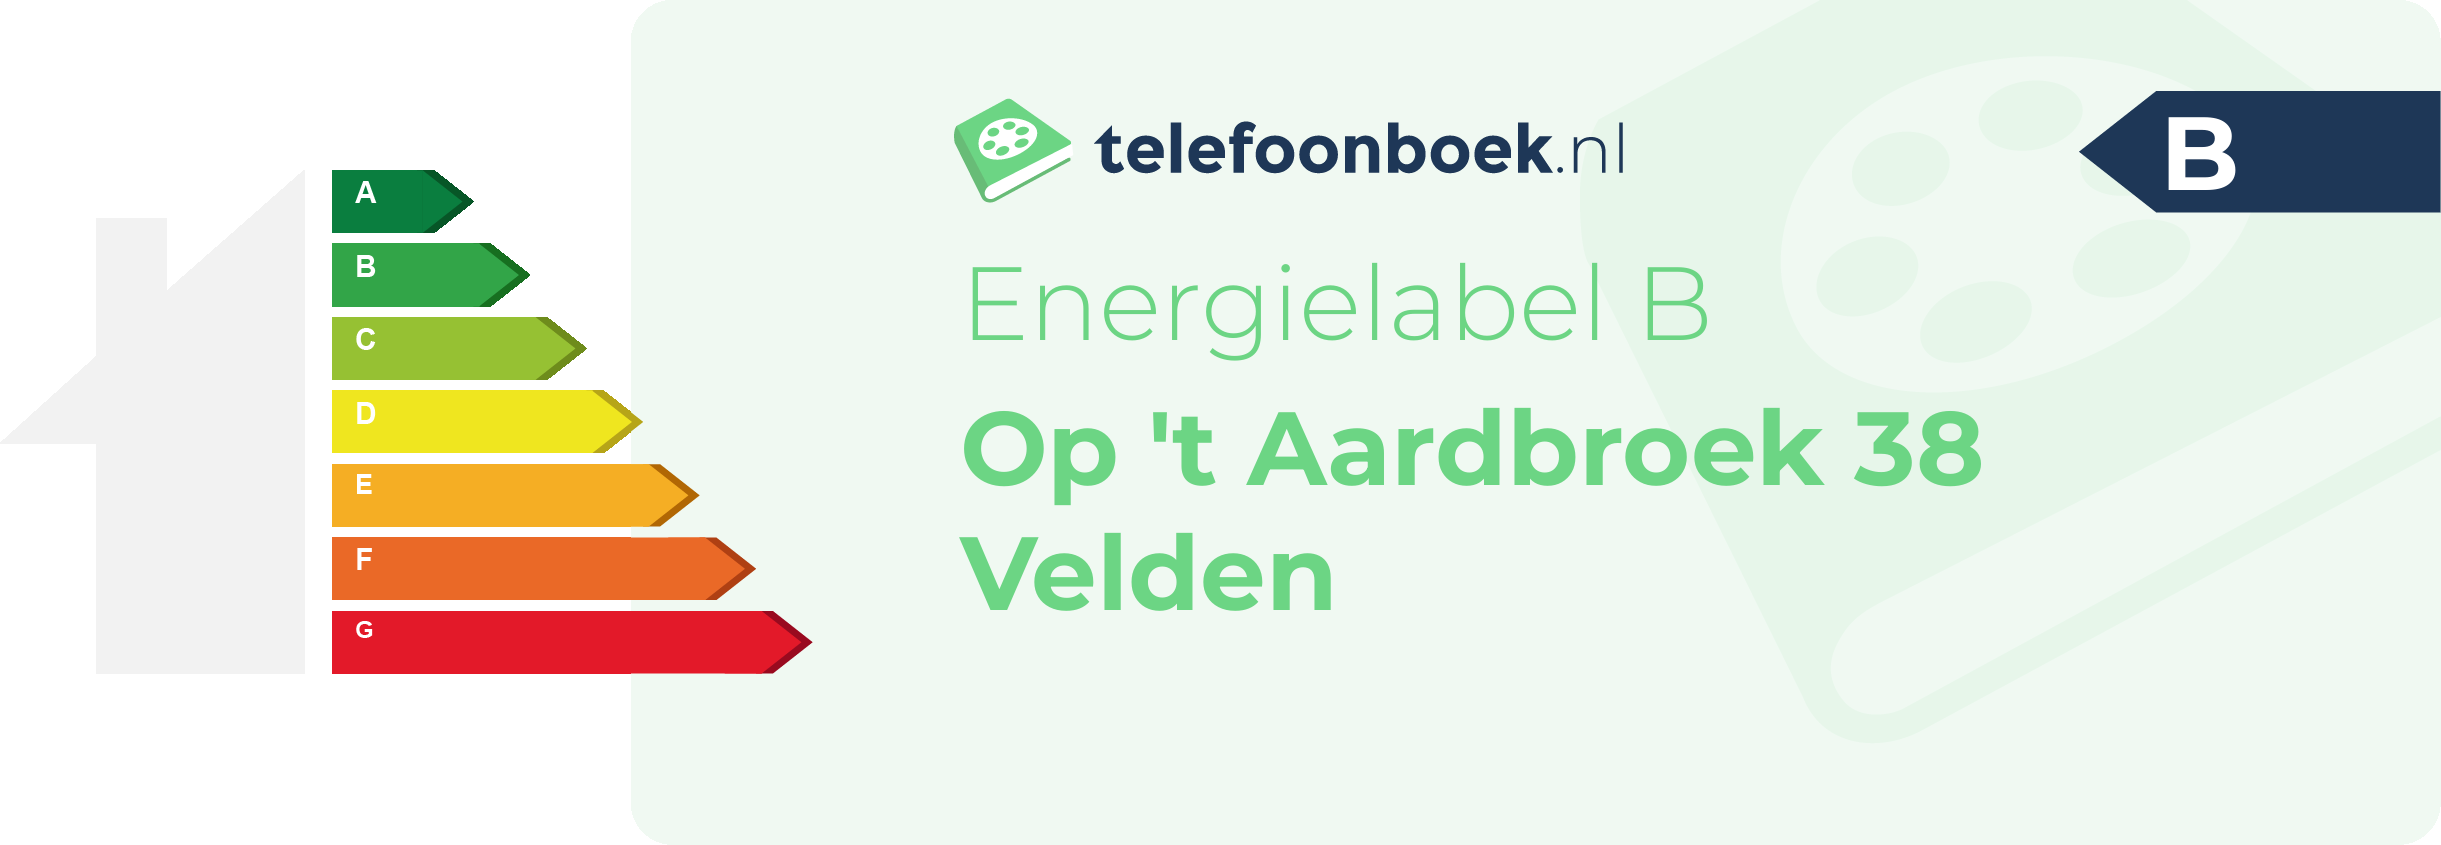 Energielabel Op 't Aardbroek 38 Velden